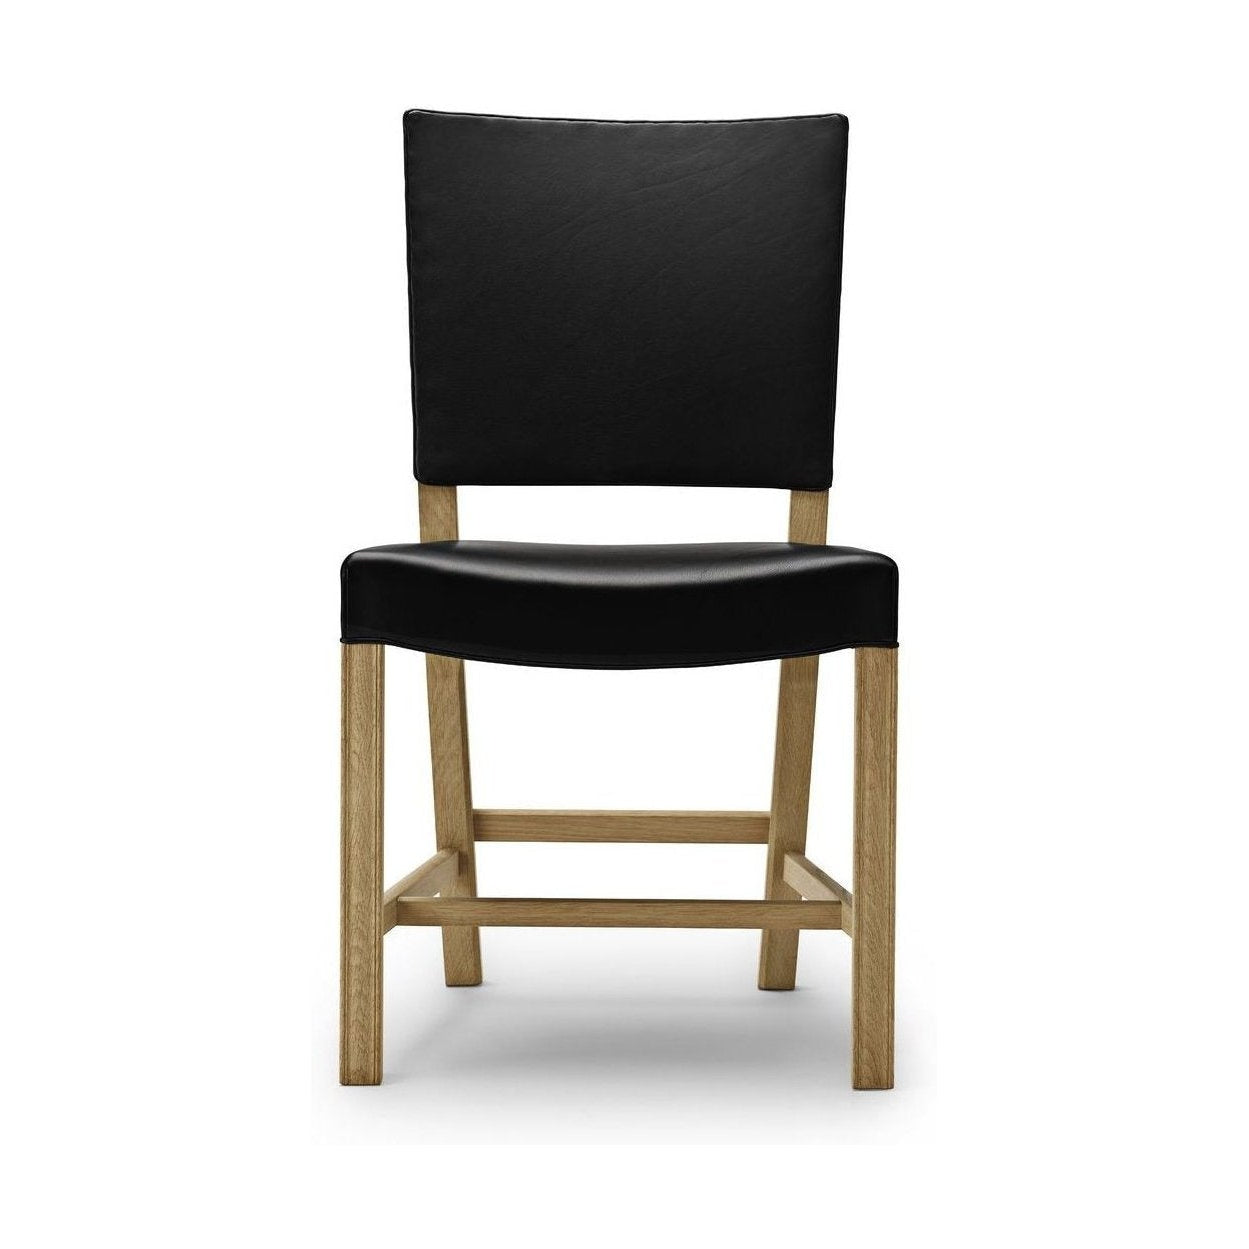 Carl Hansen KK39490 lille rød stol, eg soaped/sort læder